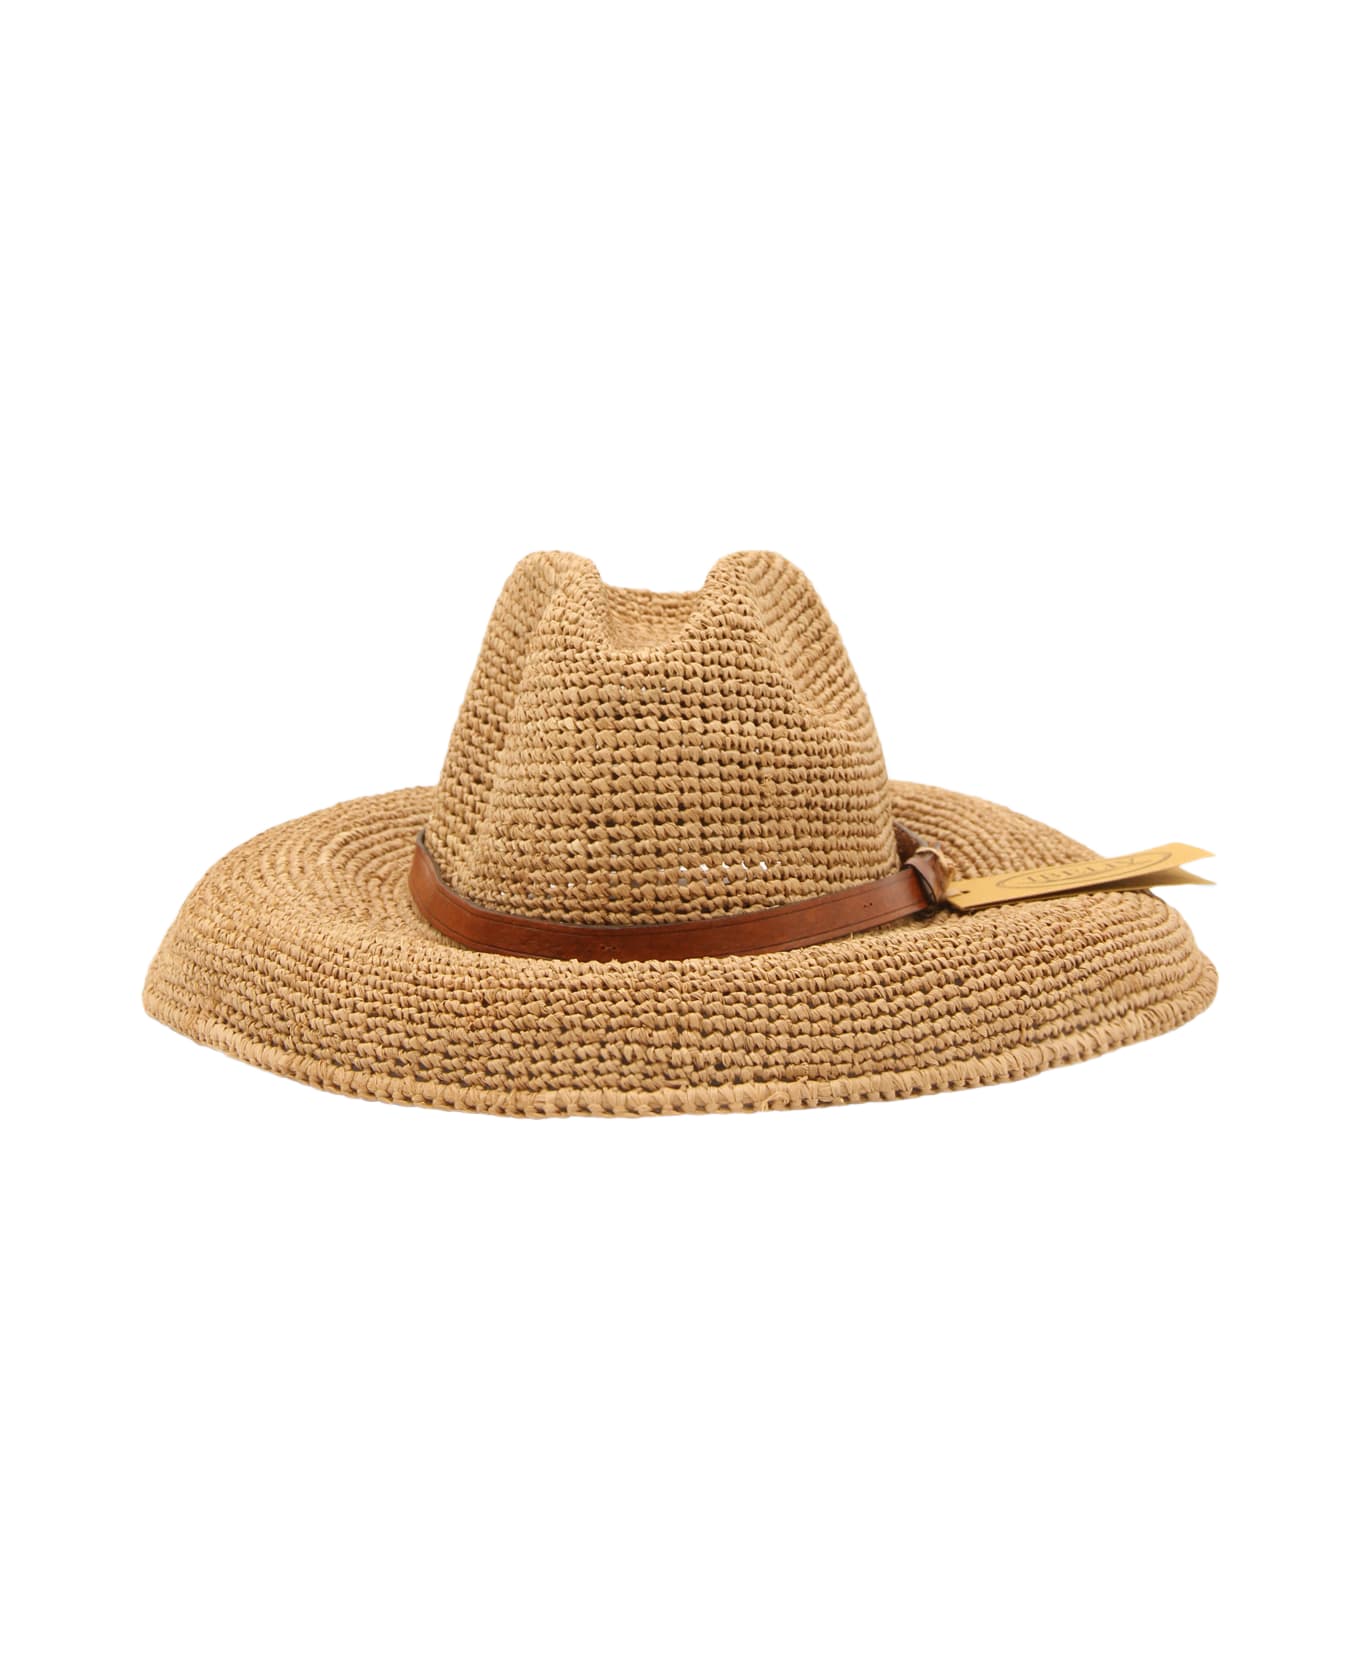 Ibeliv Natural Raffia And Brown Leather Safari Hat 帽子